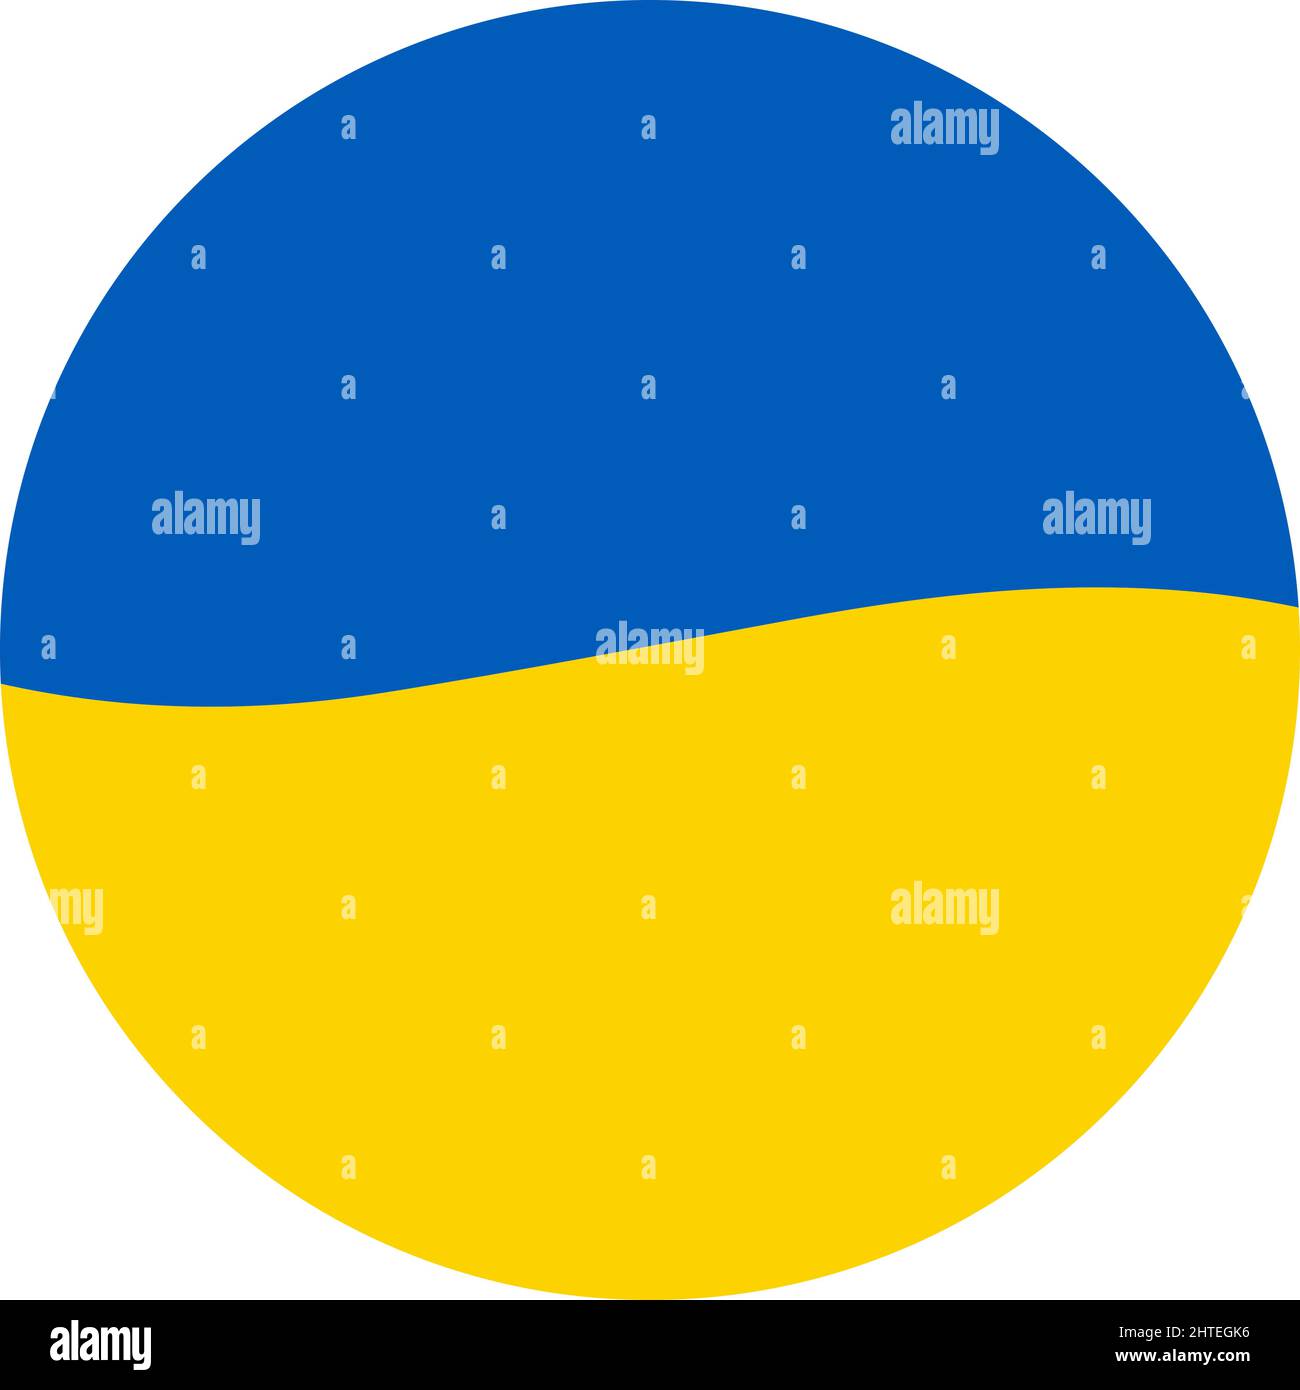 Drapeau ukrainien bleu jaune en cercle. Save Ukraine concept. Vecteur ukrainien symbole, icône, bouton.-SupplementalCategories+=Images Illustration de Vecteur